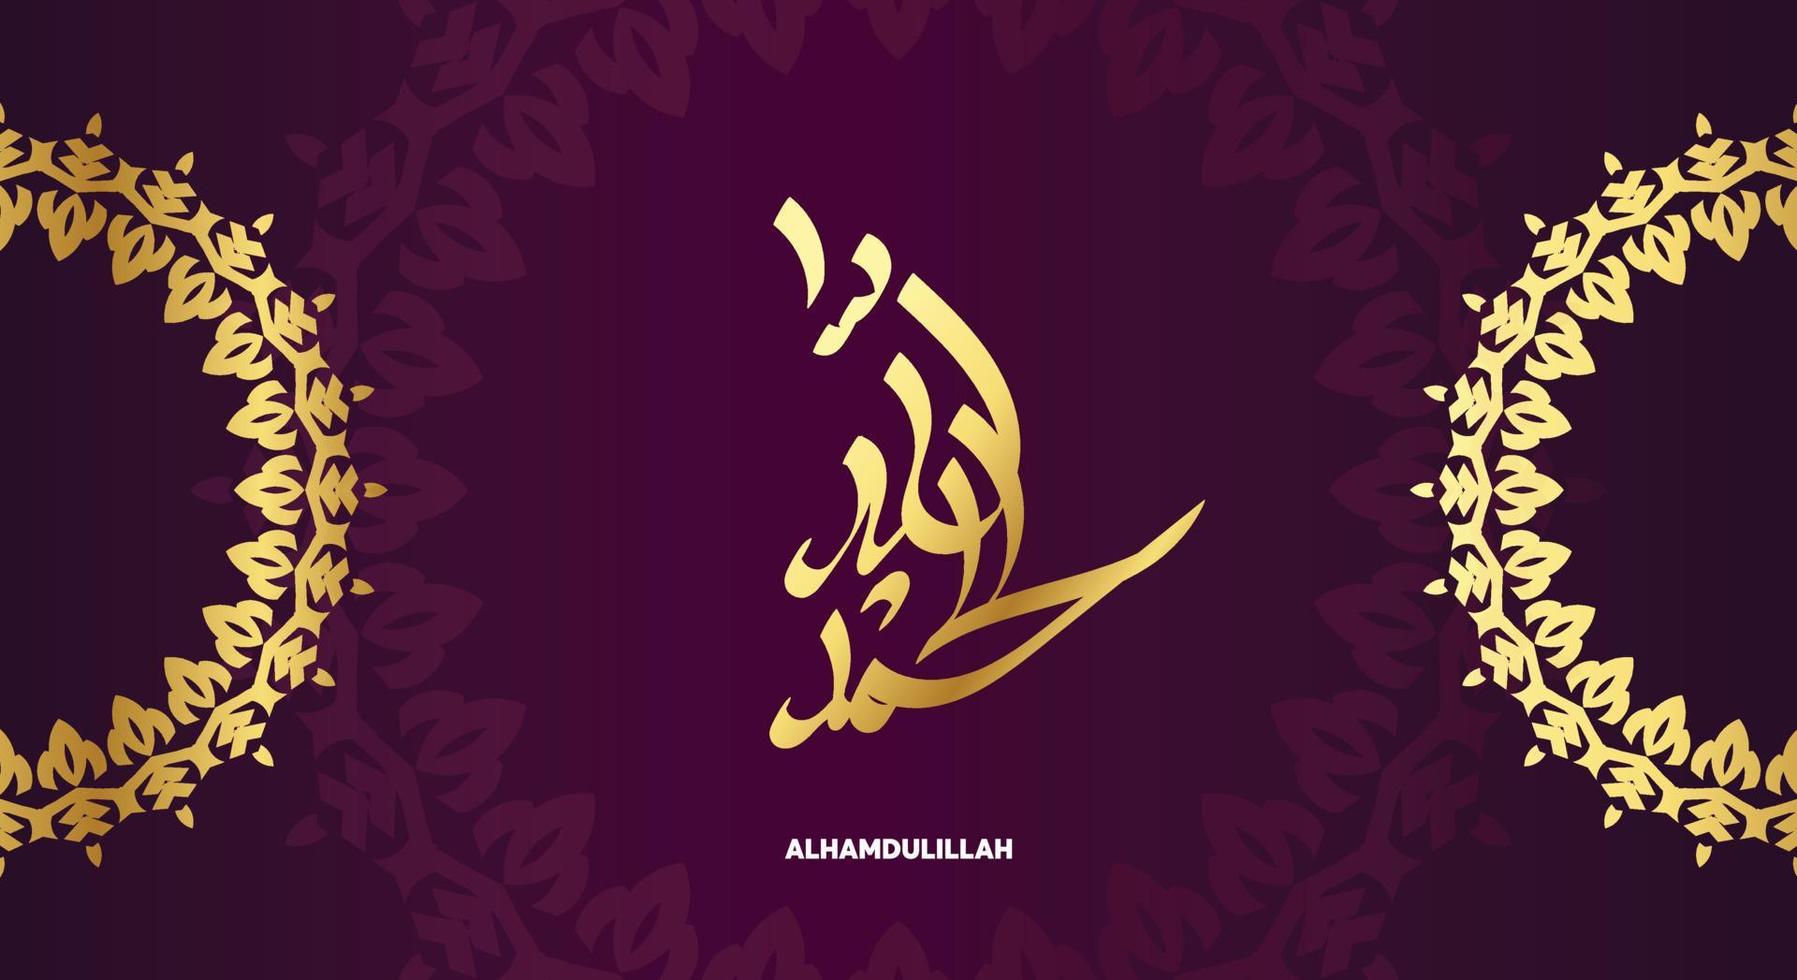 calligraphie arabe alhamdulillah de couleur dorée, adaptée à l'ornement de conception islamique ou à la décoration de mosquée vecteur